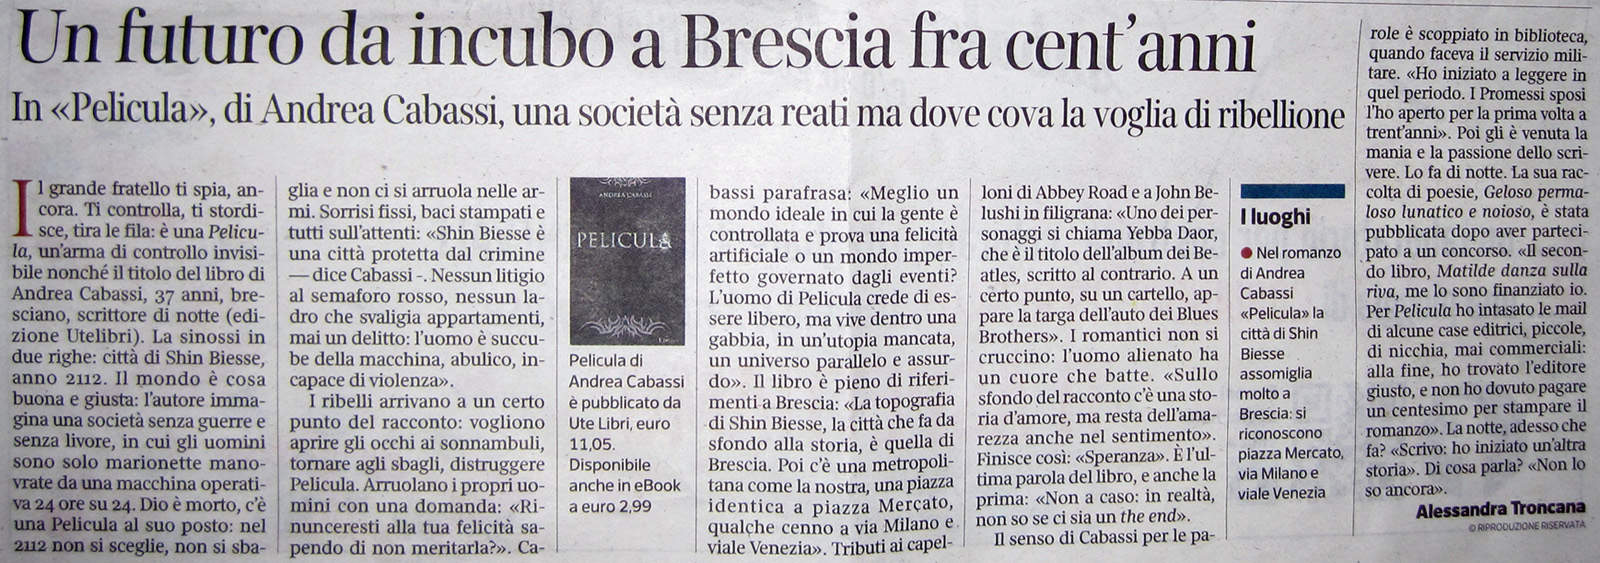 Corriere della Sera Brescia 4/2/15 p.11